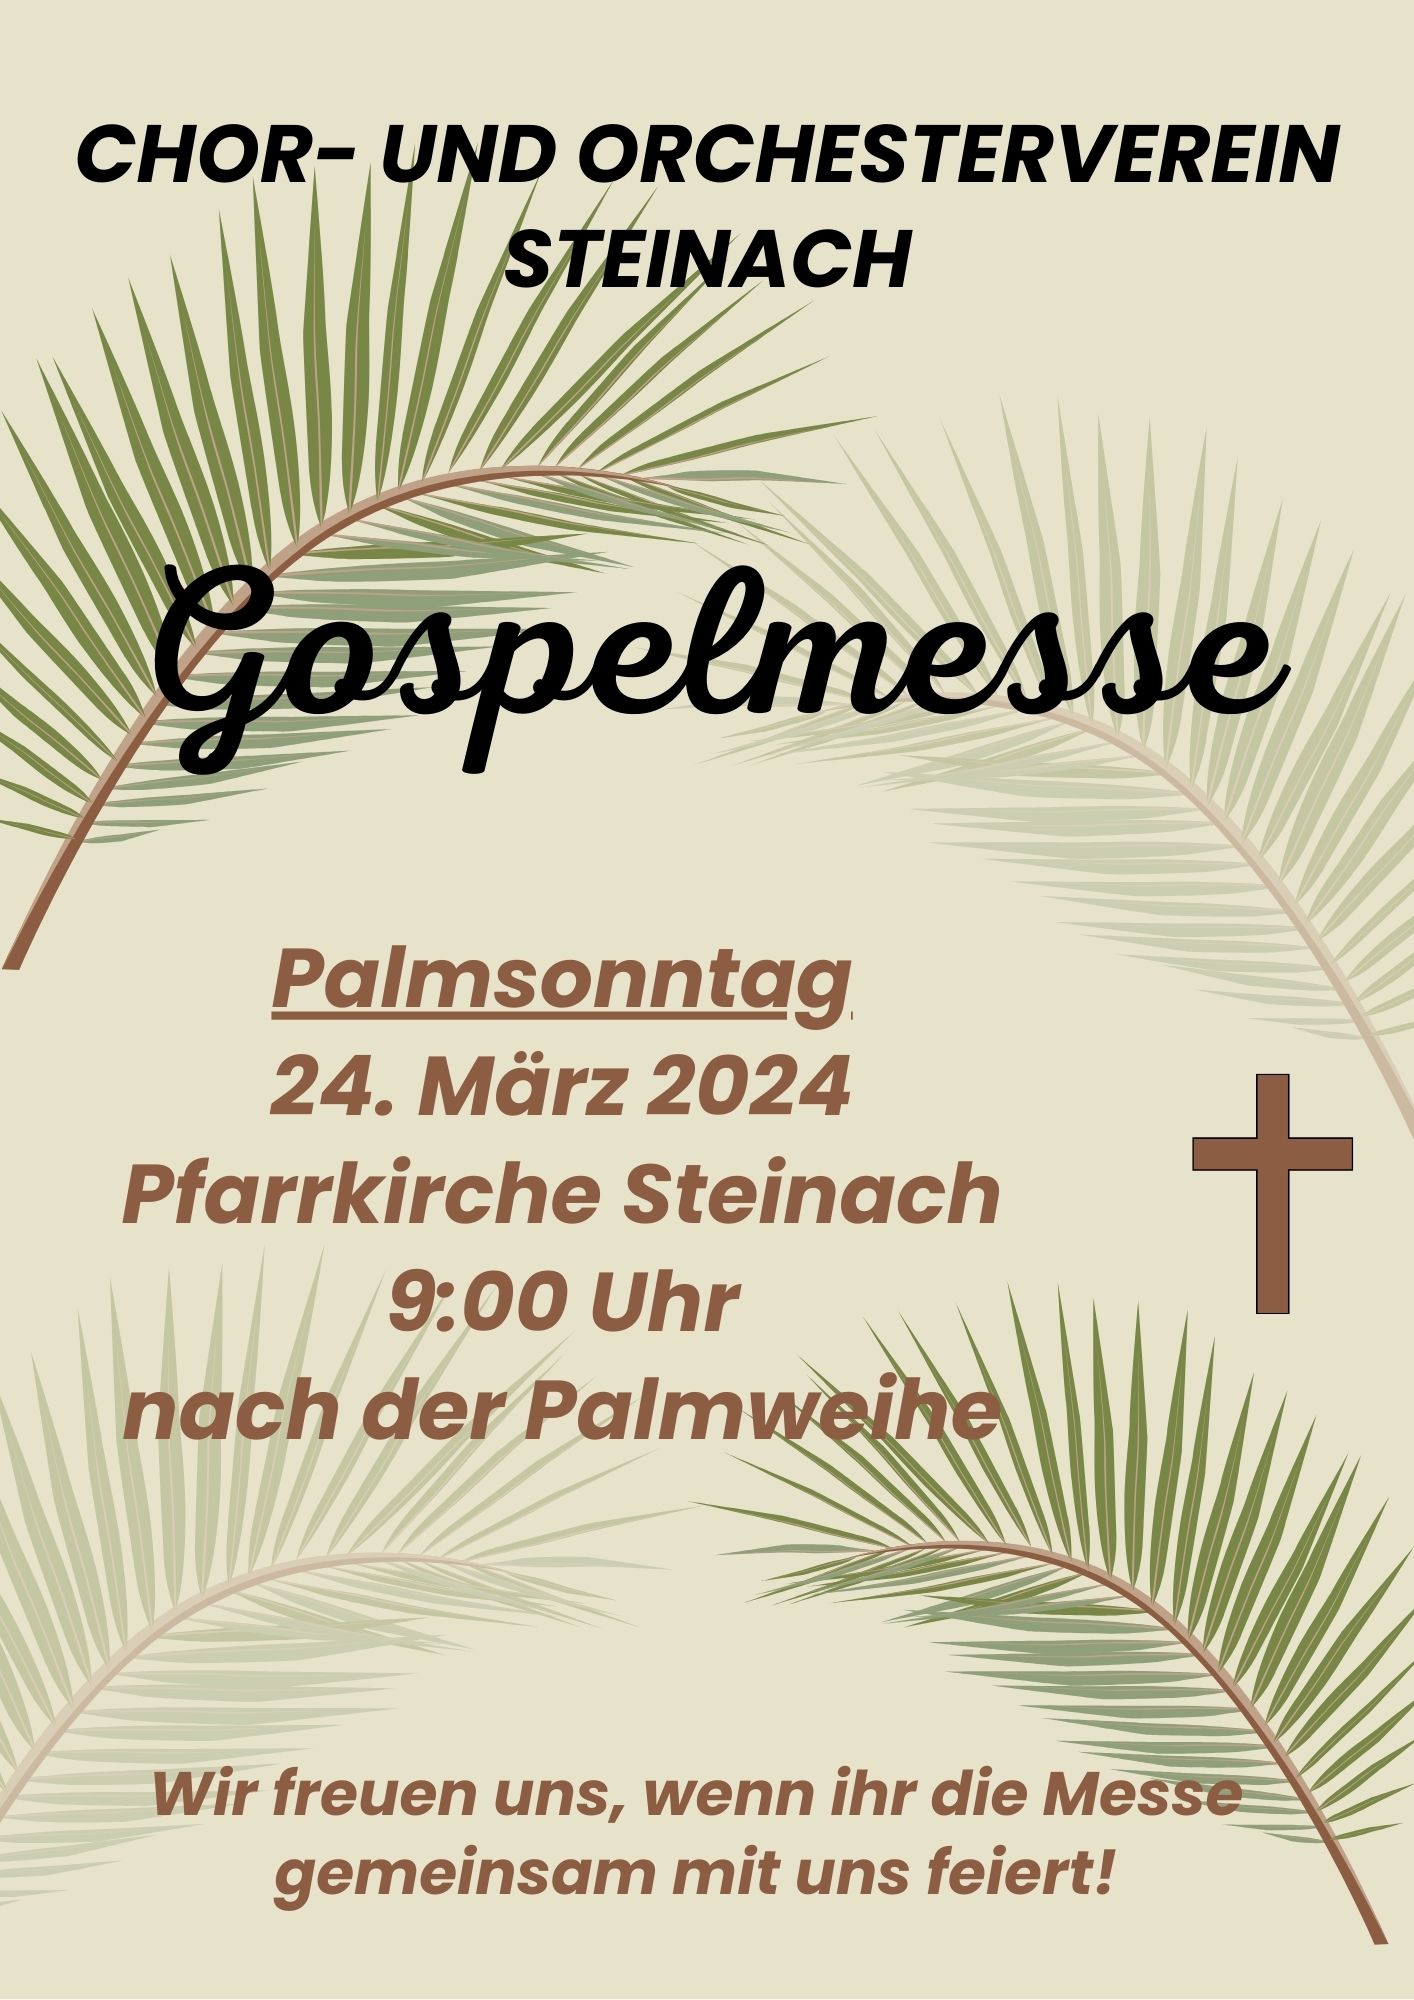 Einladung zur Gospelmesse am Palmsonntag